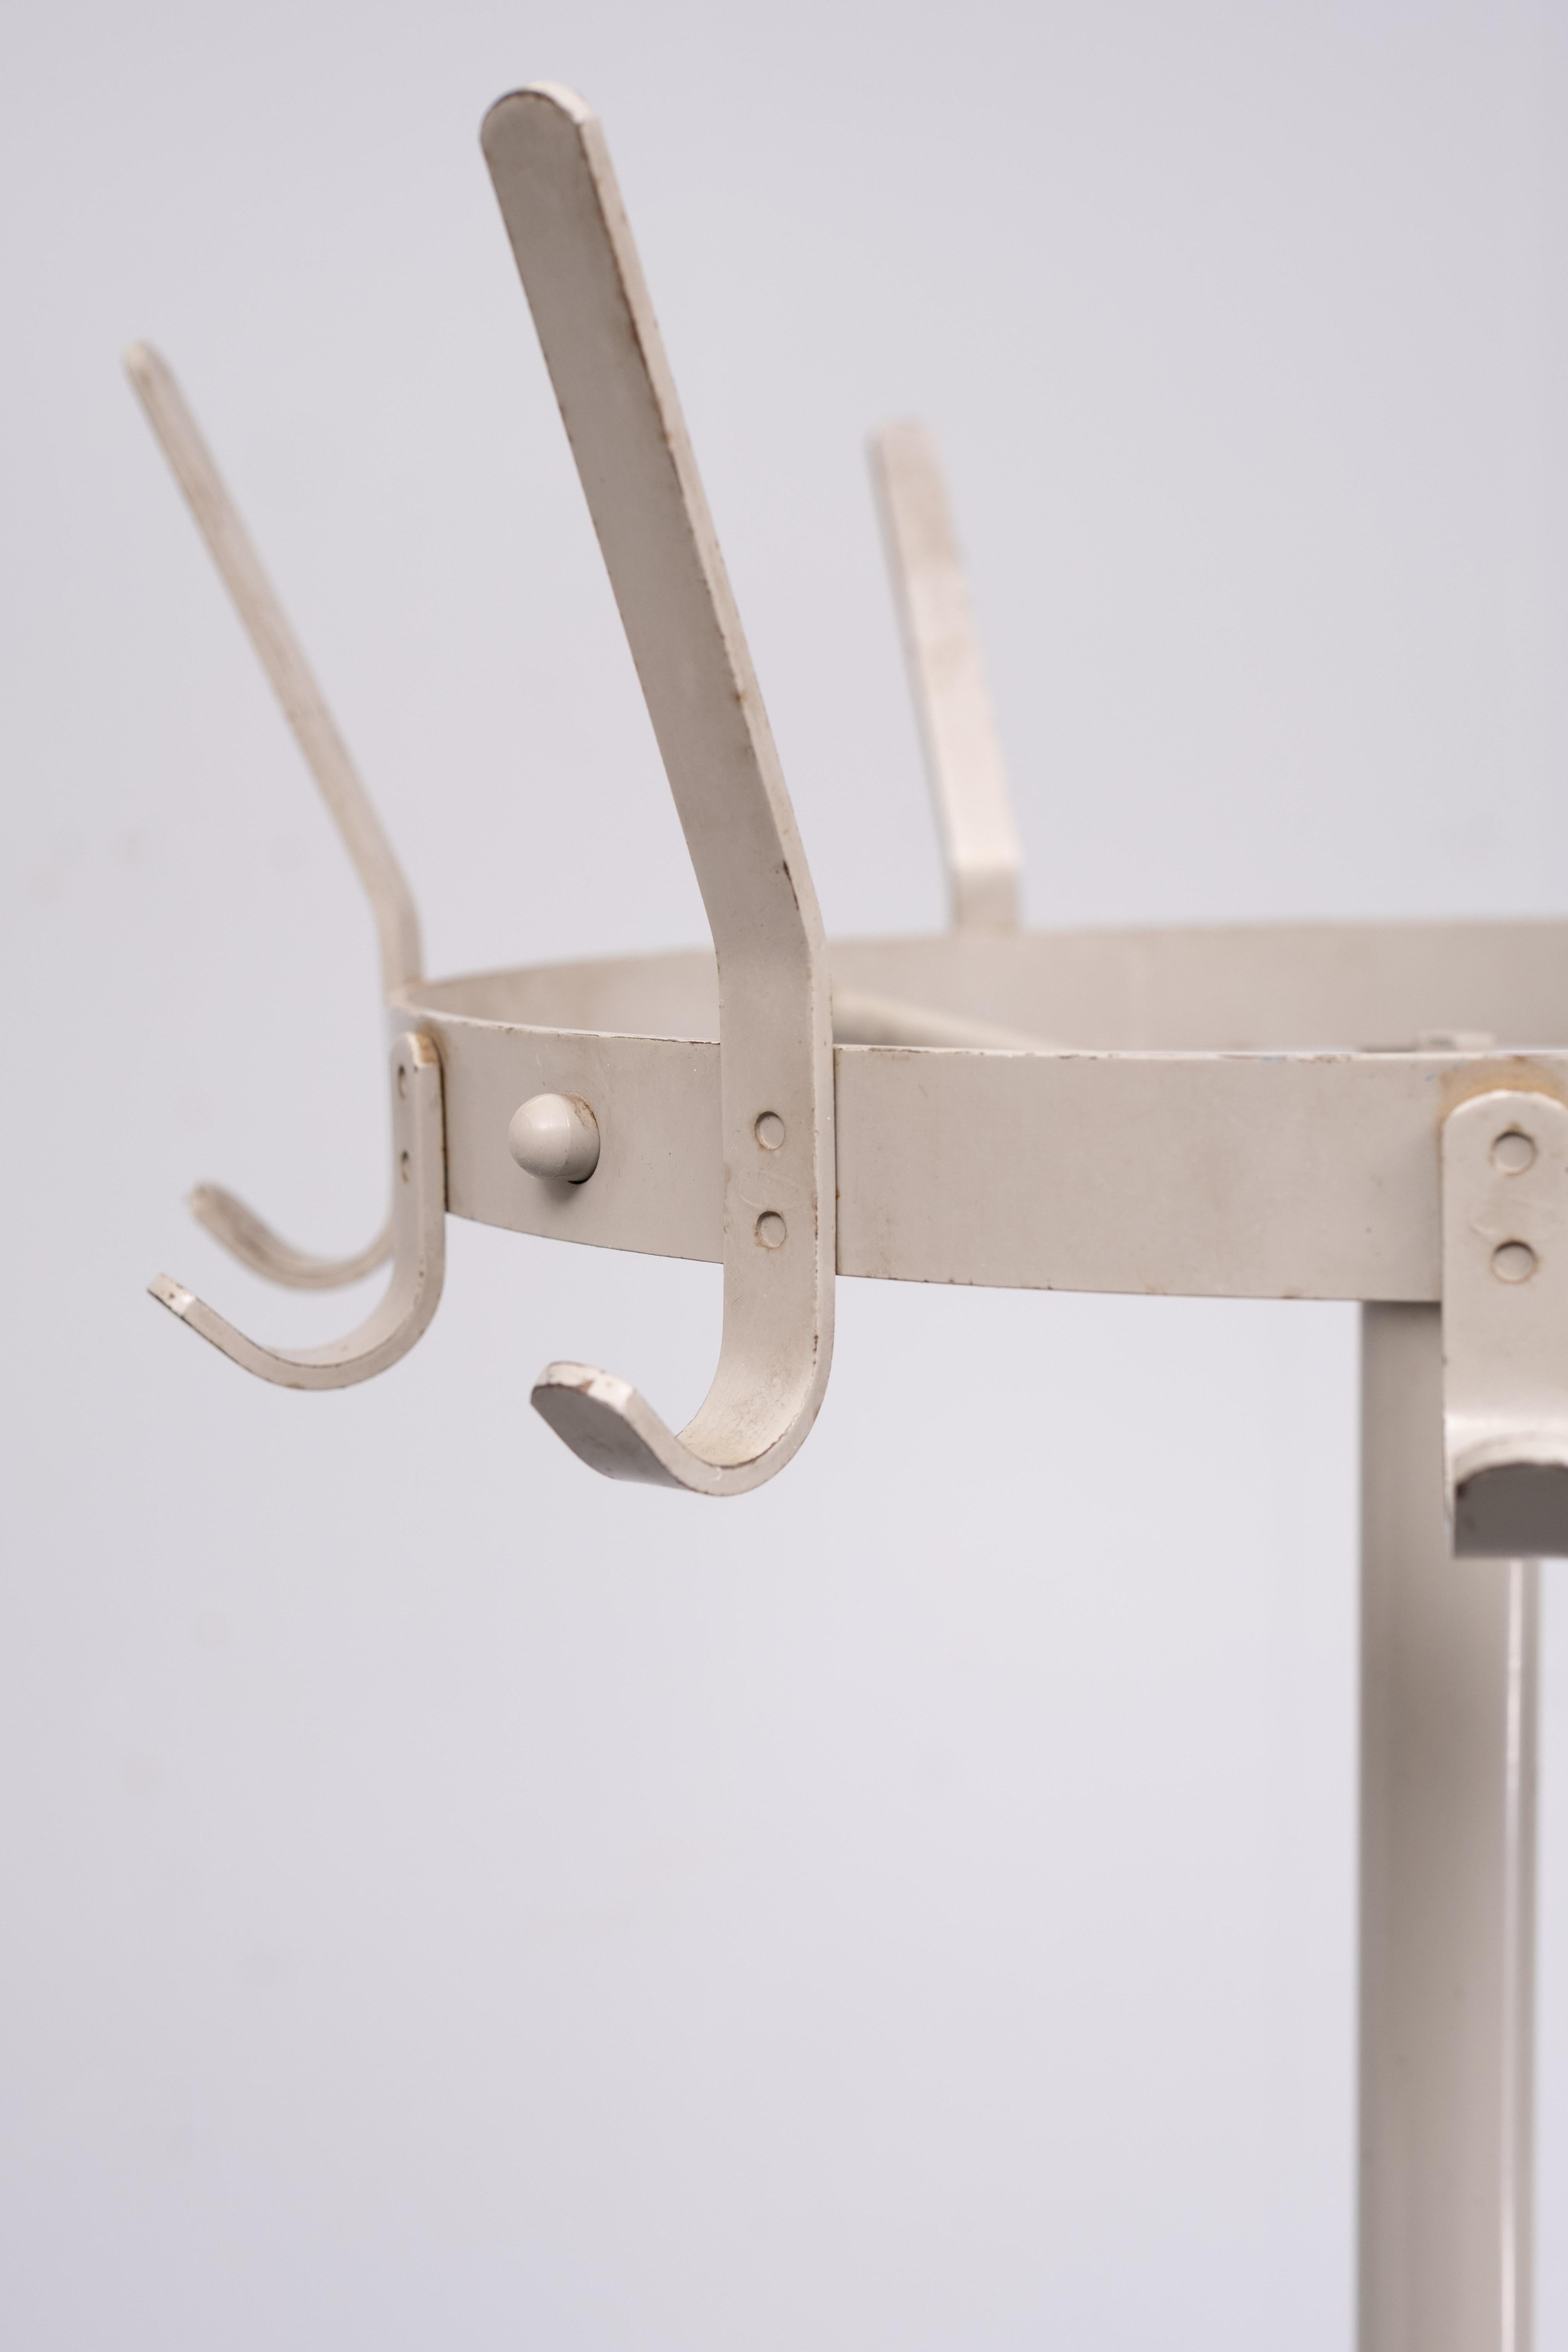 Industriel  Friso Kramer de Coates '60 avec porte-parapluie
Portemanteau en métal sur base en fonte, classique du design industriel conçu par Friso Kramer en 1968, exécuté par de Cirkel pour Ahrend. . Plaque tournante .